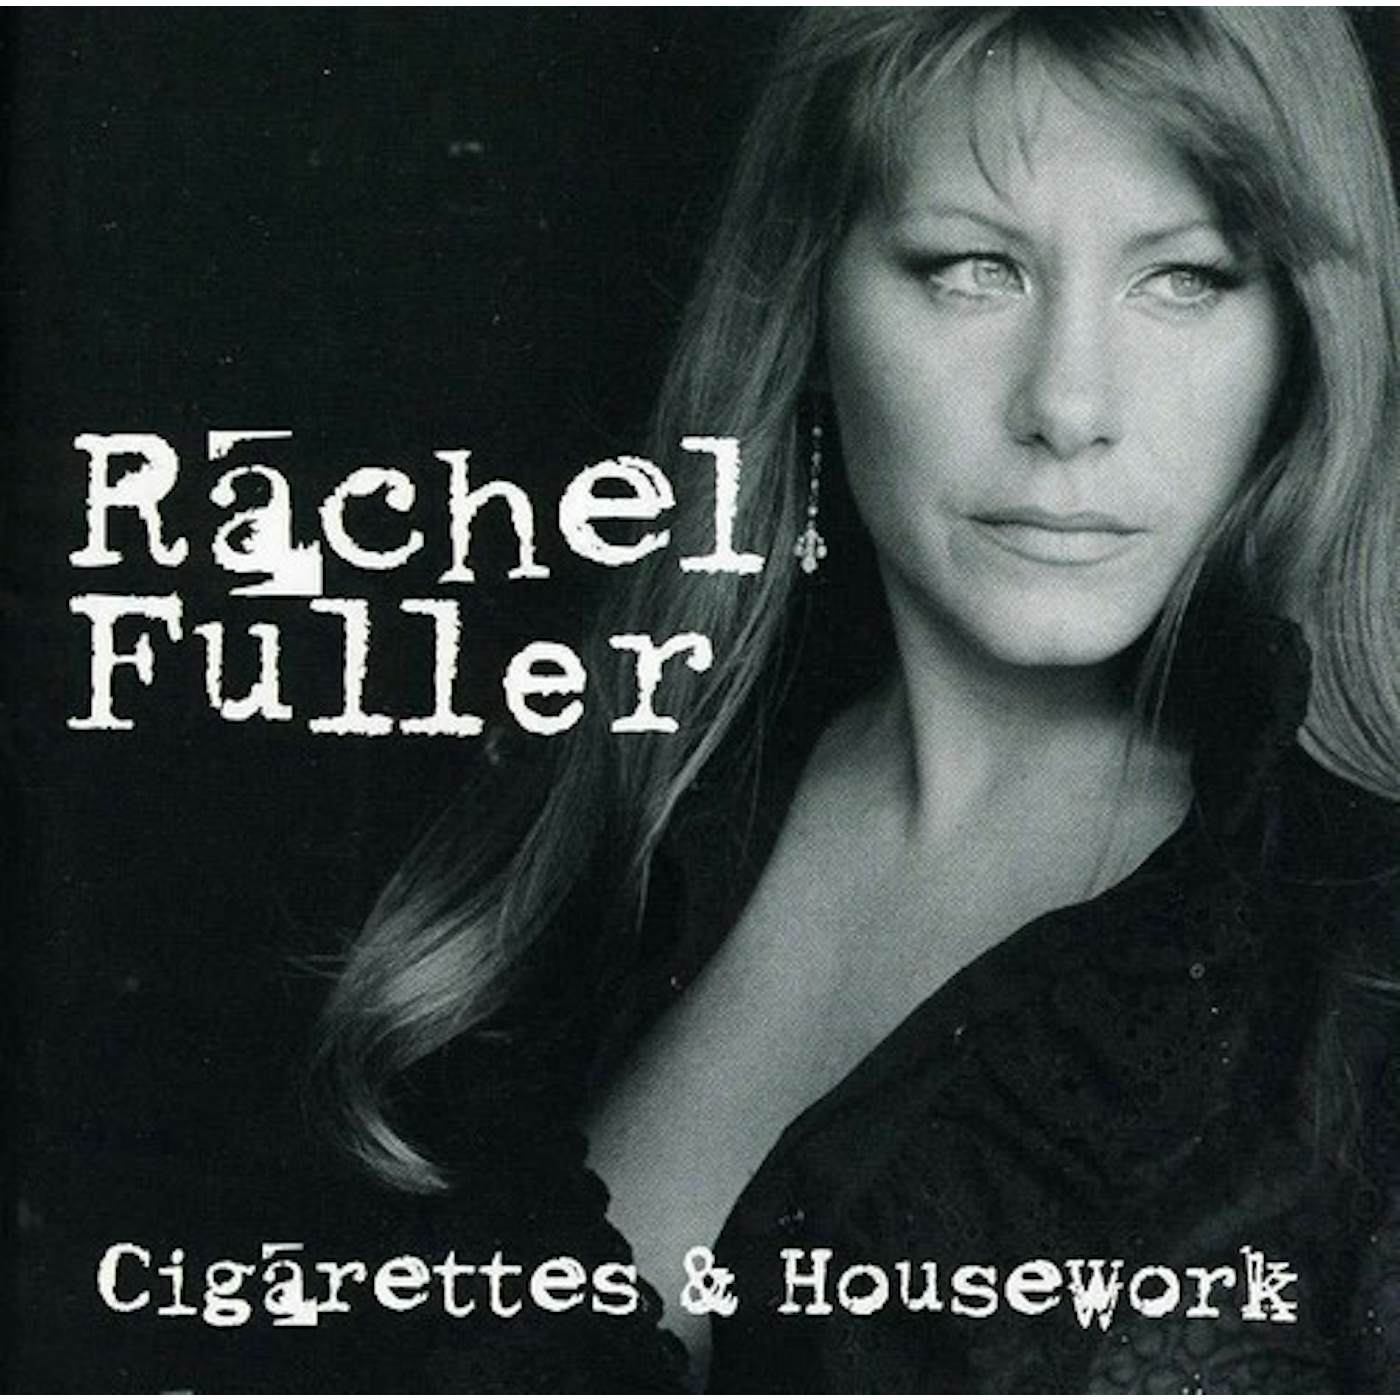 Rachel Fuller CIGARETTES & HOUSEWORK CD